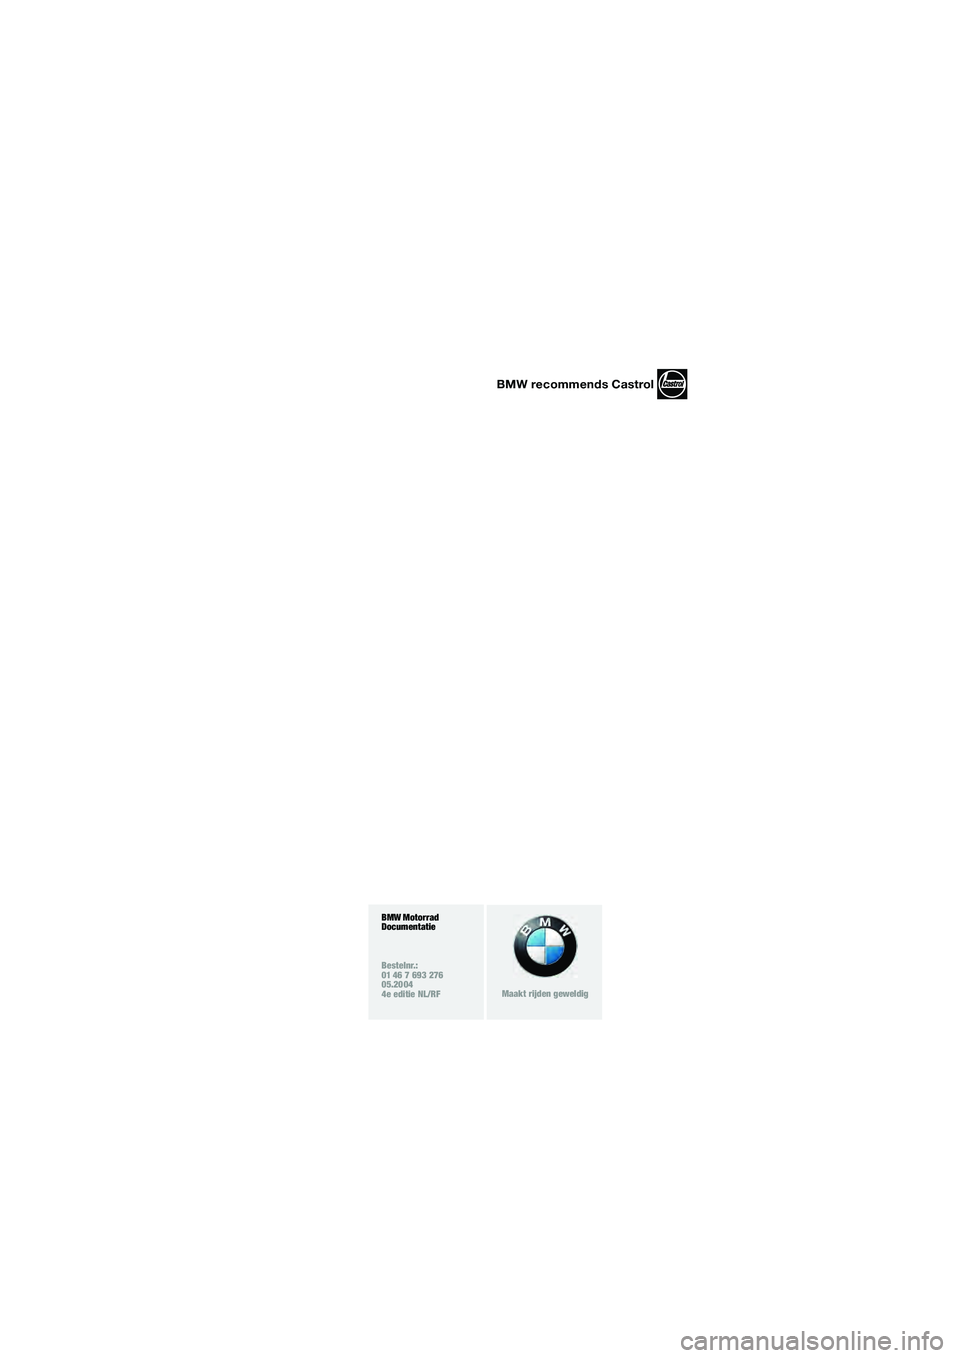 BMW MOTORRAD R 1150 R 2004  Handleiding (in Dutch) BMW recommends Castrol
BMW Motorrad
Documentatie 
Bestelnr.:
01 46 7 693 276
05.2004
4e editie NL/RF
Maakt rijden geweldig
10r28run3.fm  Seite 4  Mittwoch, 26. Mai 2004  9:24 09 